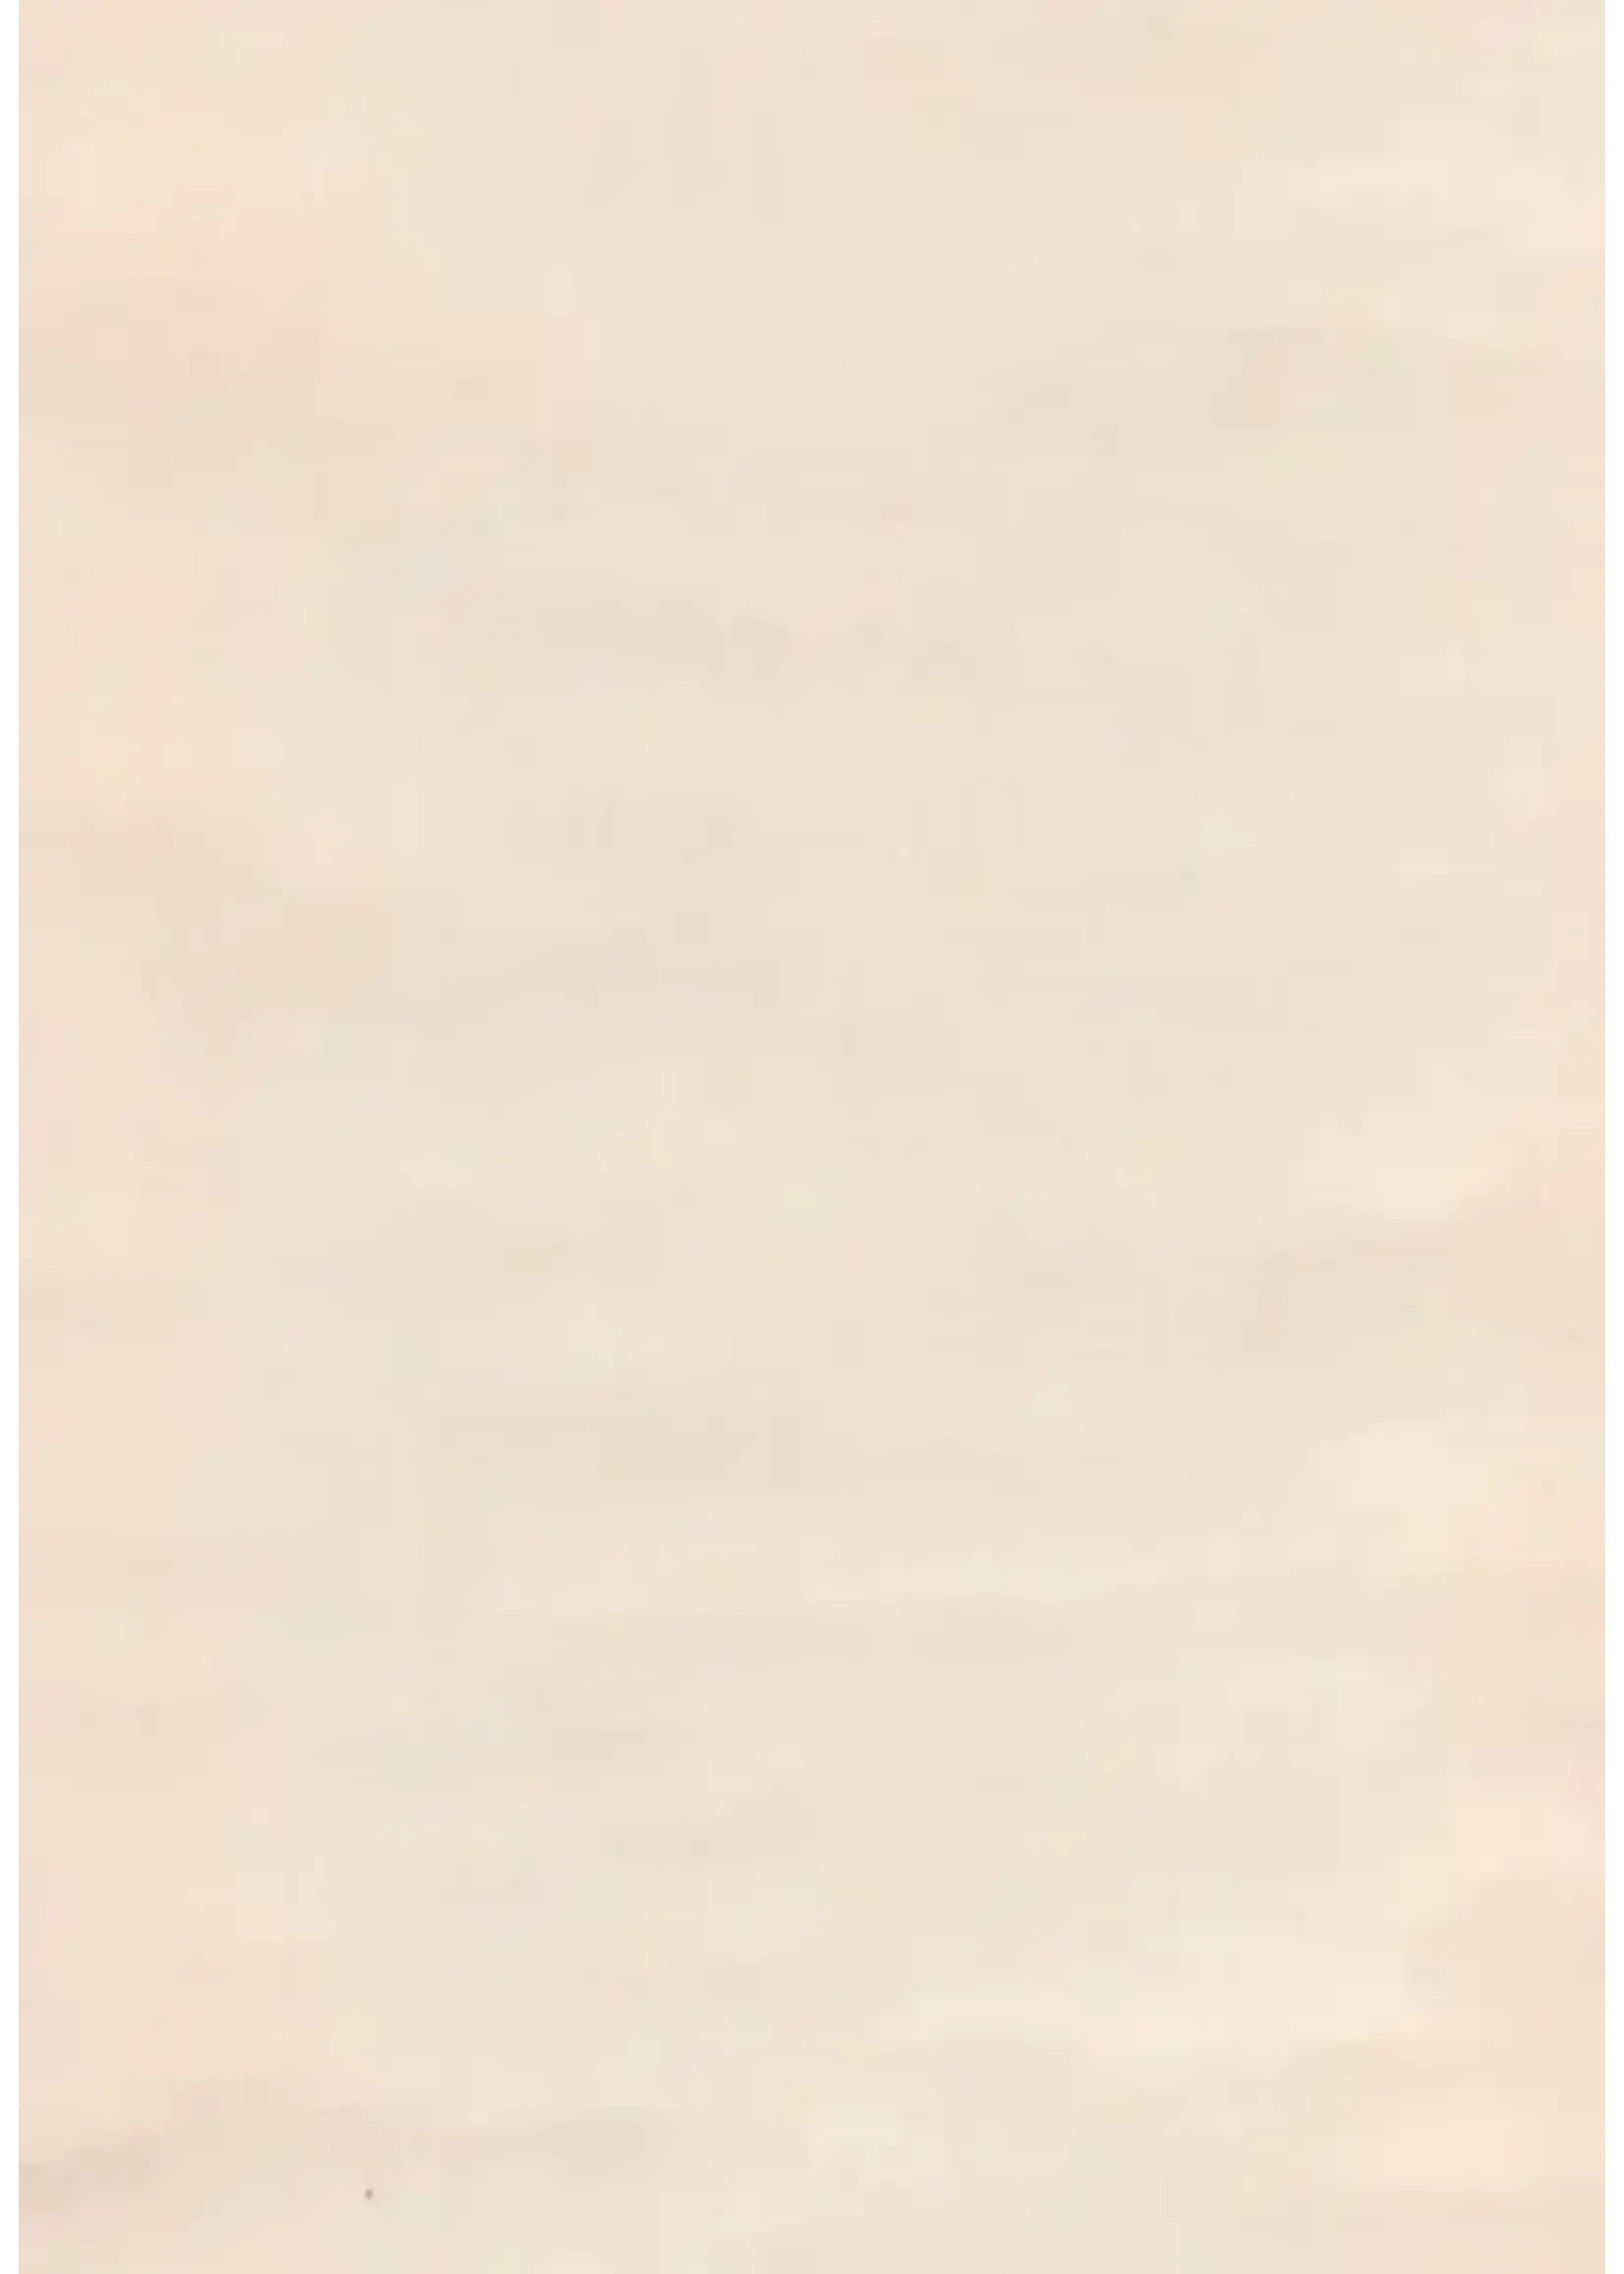 Boekbinderslinnen creme kleur circa 27 x 32 cm